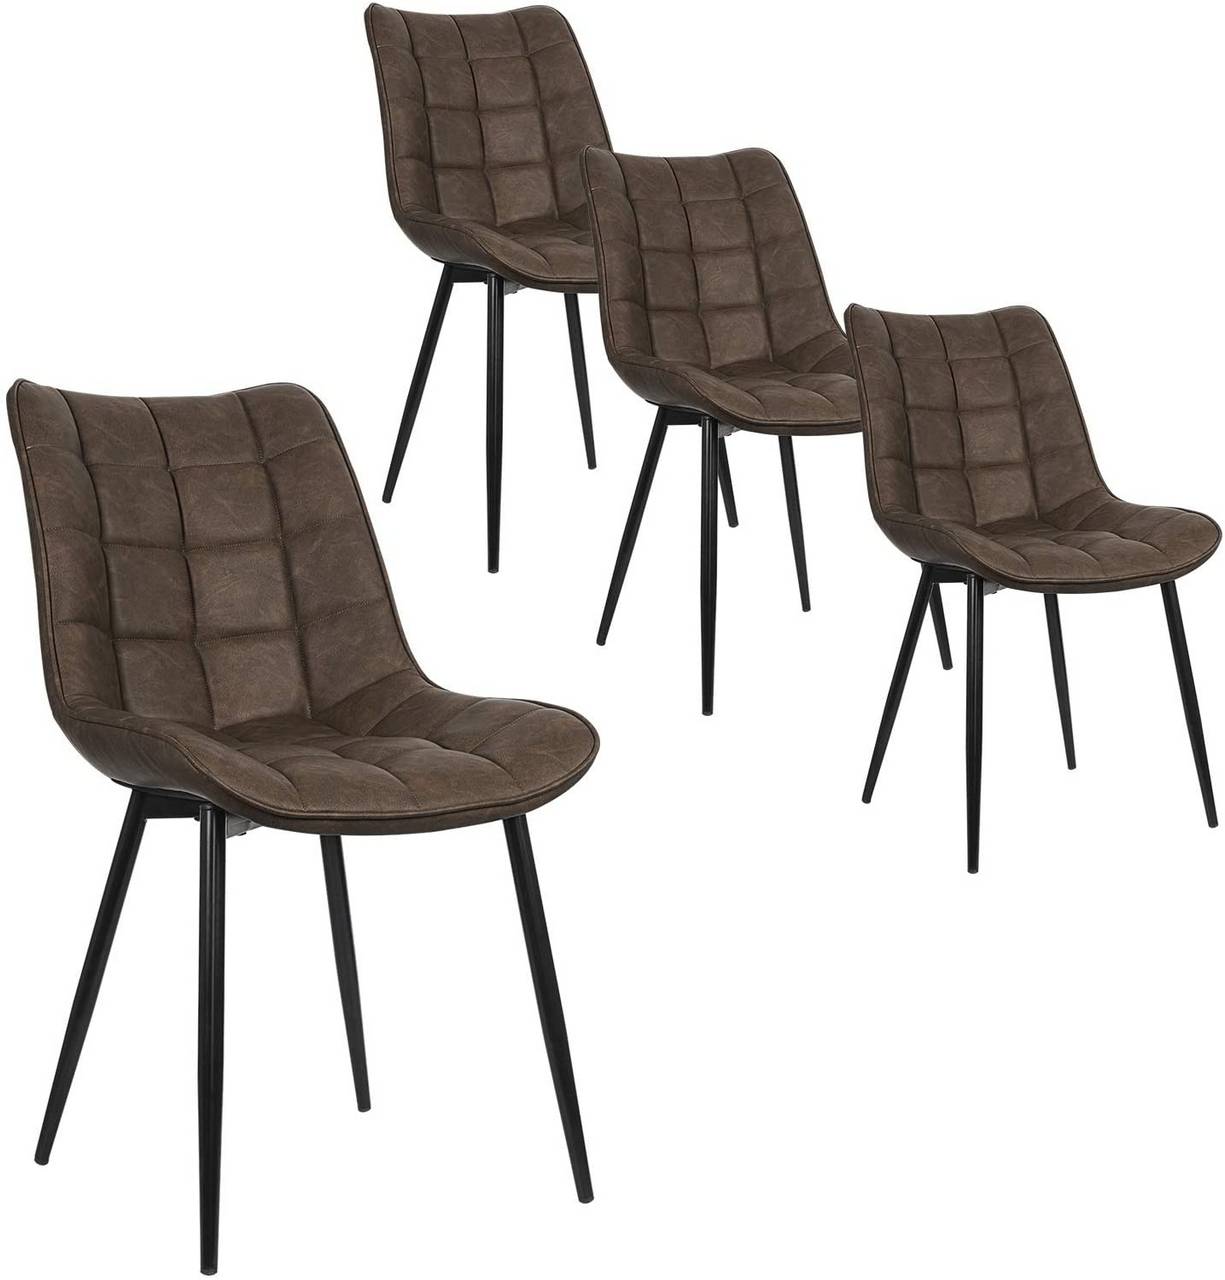 4 x Esszimmerstühle 4er Set Esszimmerstuhl Küchenstuhl Polsterstuhl Design  Stuhl mit Rückenlehne, mit Sitzfläche aus Samt, Gestell aus Metall